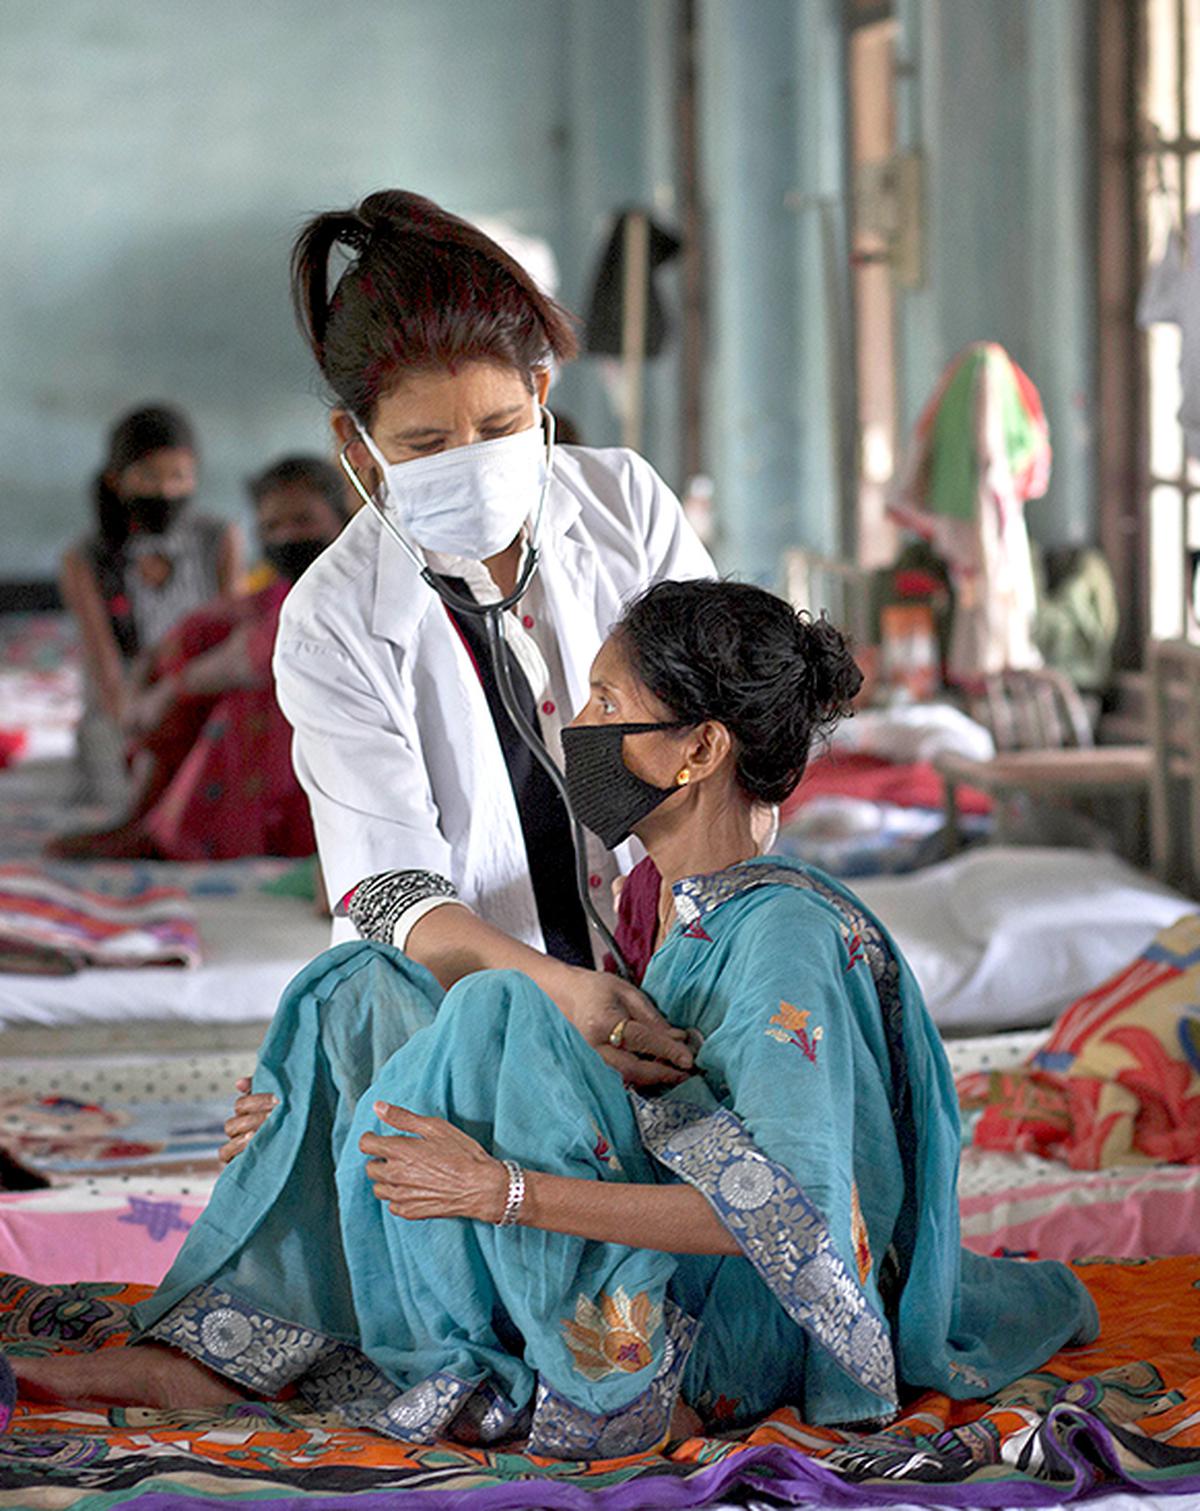 یک پزشک یک بیمار مبتلا به سل را در یک بیمارستان سل در روز جهانی سل در Gauhati، هند، شنبه، 24 مارس 2018 معاینه می کند. در اوایل این ماه، نخست وزیر هند، نارندرا مودی، کمپینی را برای پیگیری سریع واکنش هند به سل راه اندازی کرد، که اکنون شروع شده است. پیشرو قاتل عفونی جهان 